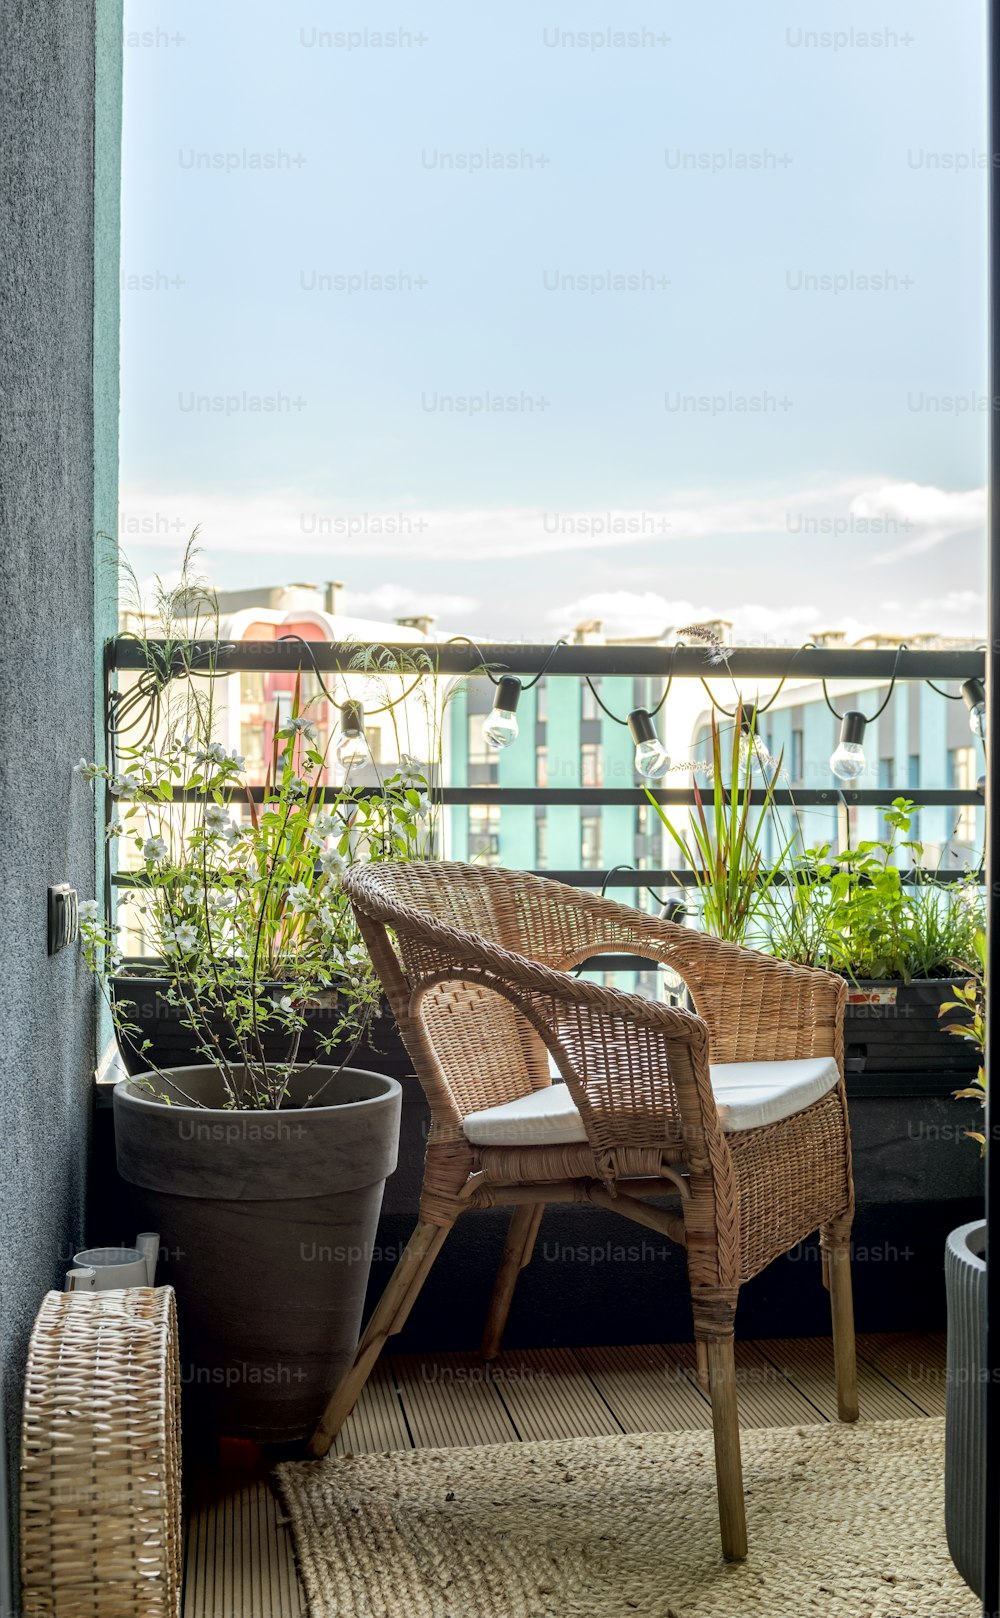 Una silla de mimbre sentada en un balcón junto a una planta en maceta